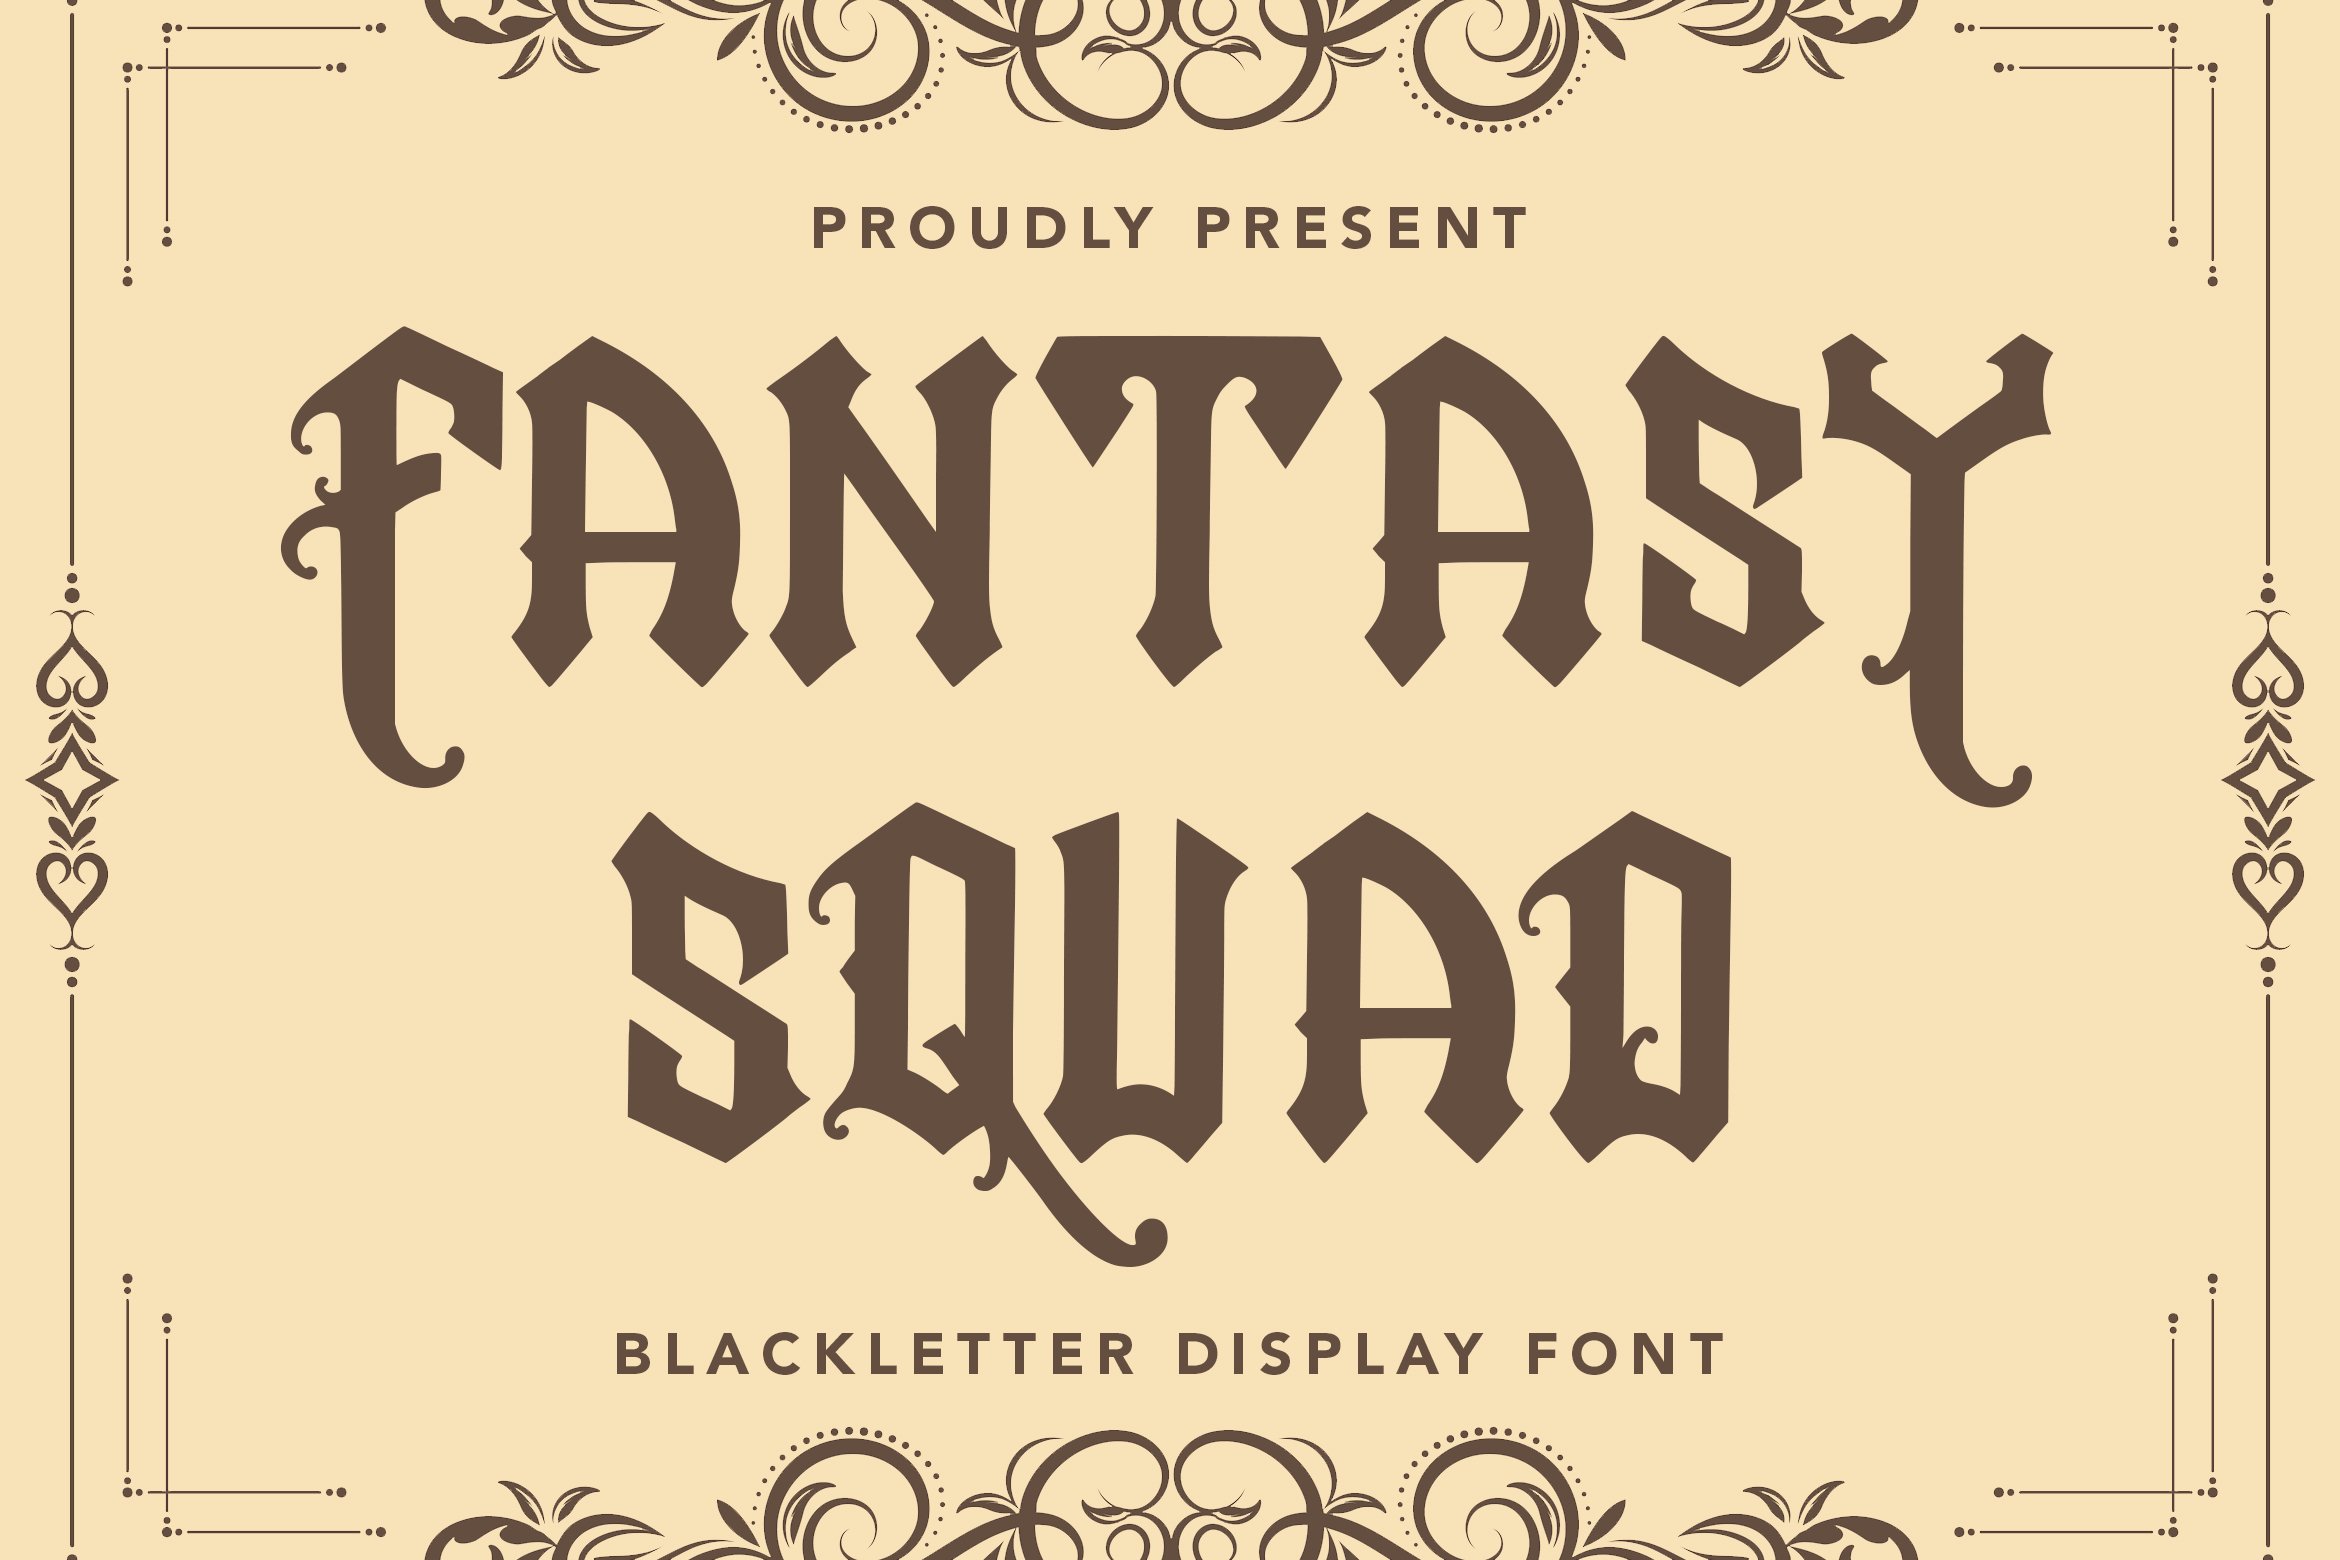 FantasySquad - Blackletter Font cover image.